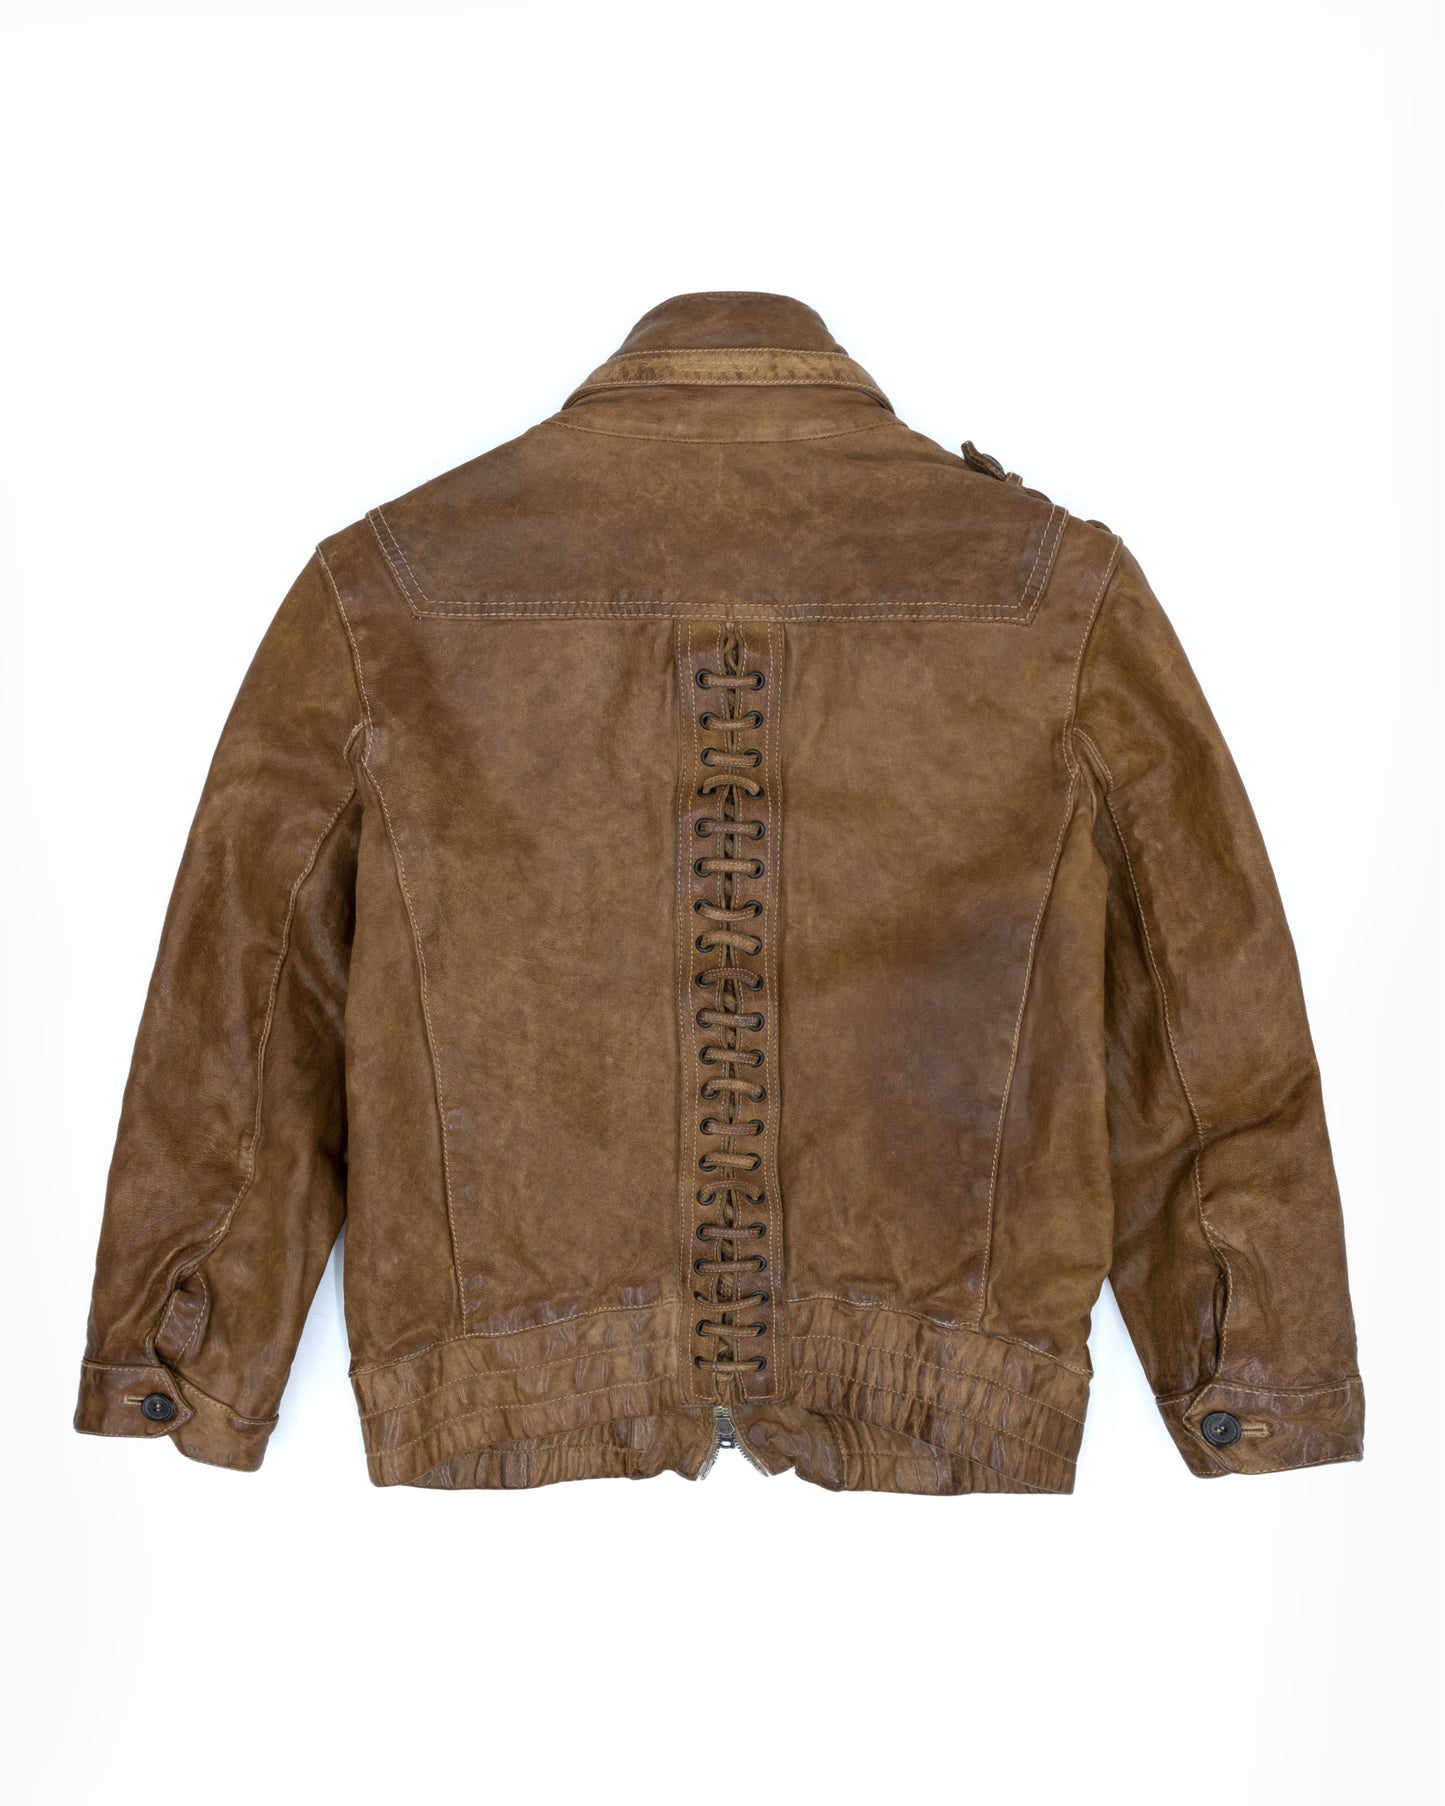 Neil Barett Lace Up Leather Jacket